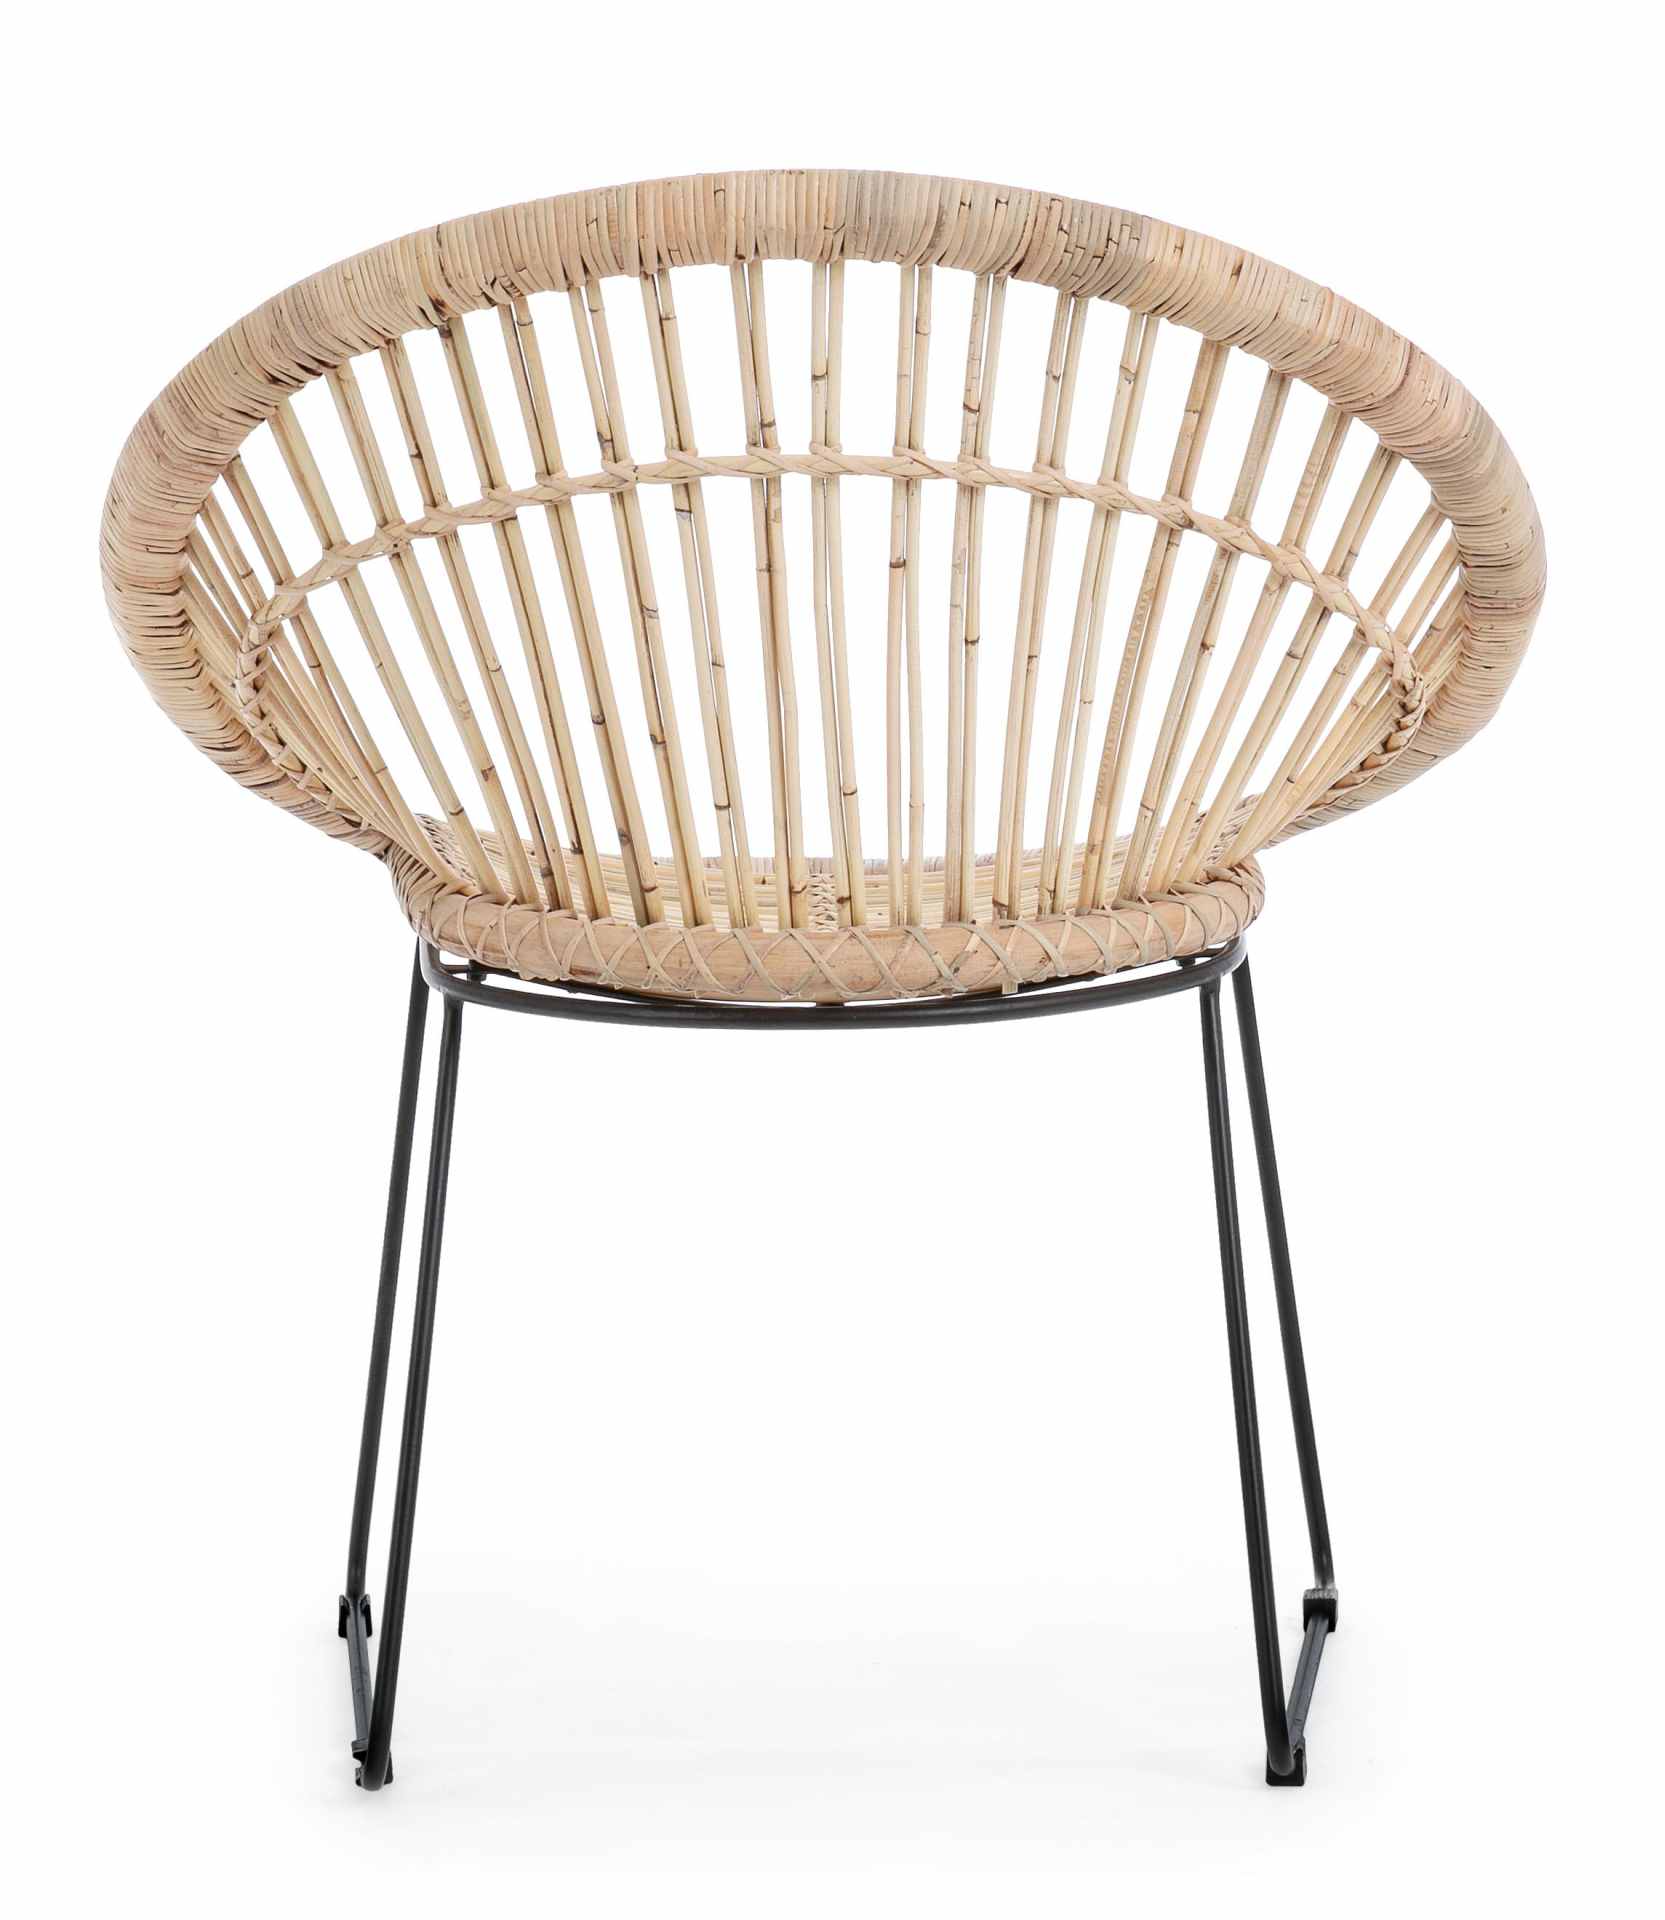 Der Sessel Cayes überzeugt mit seinem klassischen Design. Gefertigt wurde er aus Rattan, welches einen natürlichen Farbton besitzt. Das Gestell ist aus Metall und hat eine schwarze Farbe. Der Sessel besitzt eine Sitzhöhe von 45 cm. Die Breite beträgt 75 c